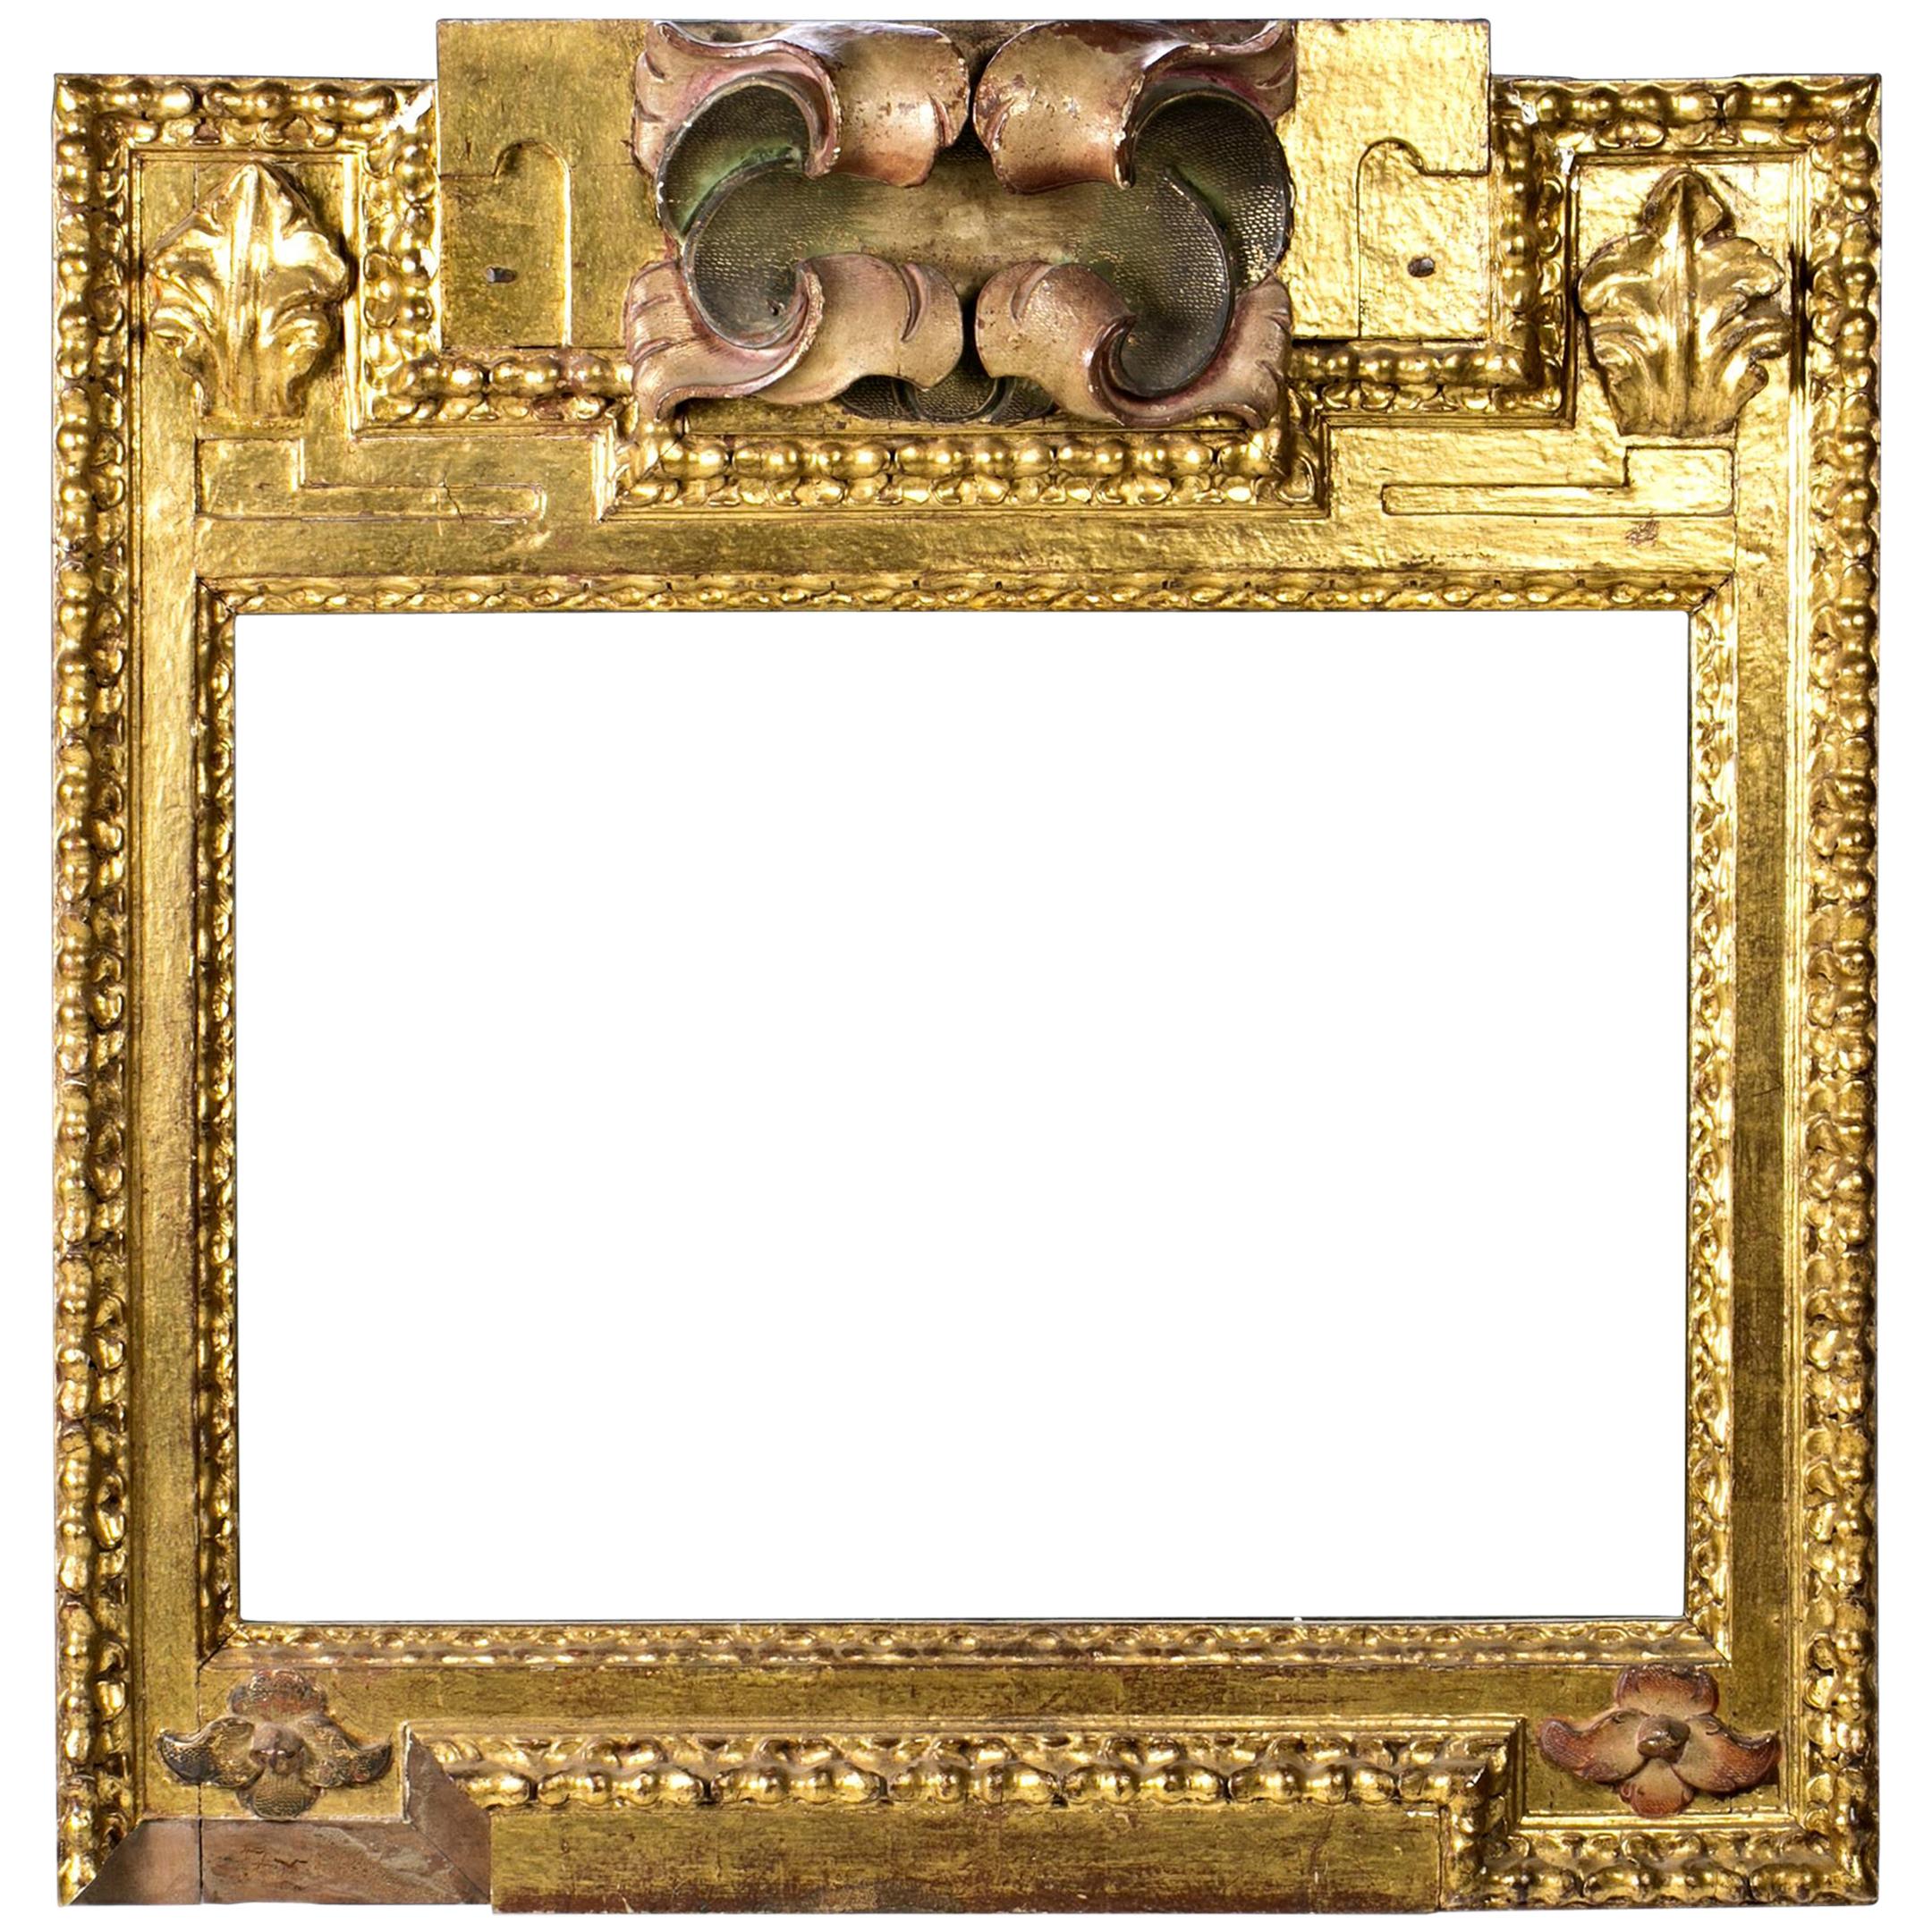 Rahmen. Vergoldetes und polychromiertes Holz, 17. Jahrhundert.
Im unteren linken Bereich sind Schäden vorhanden.
Rahmen aus geschnitztem Holz vergoldet und polychrome in bestimmten Bereichen, die eine Dekoration auf der Grundlage von Bands